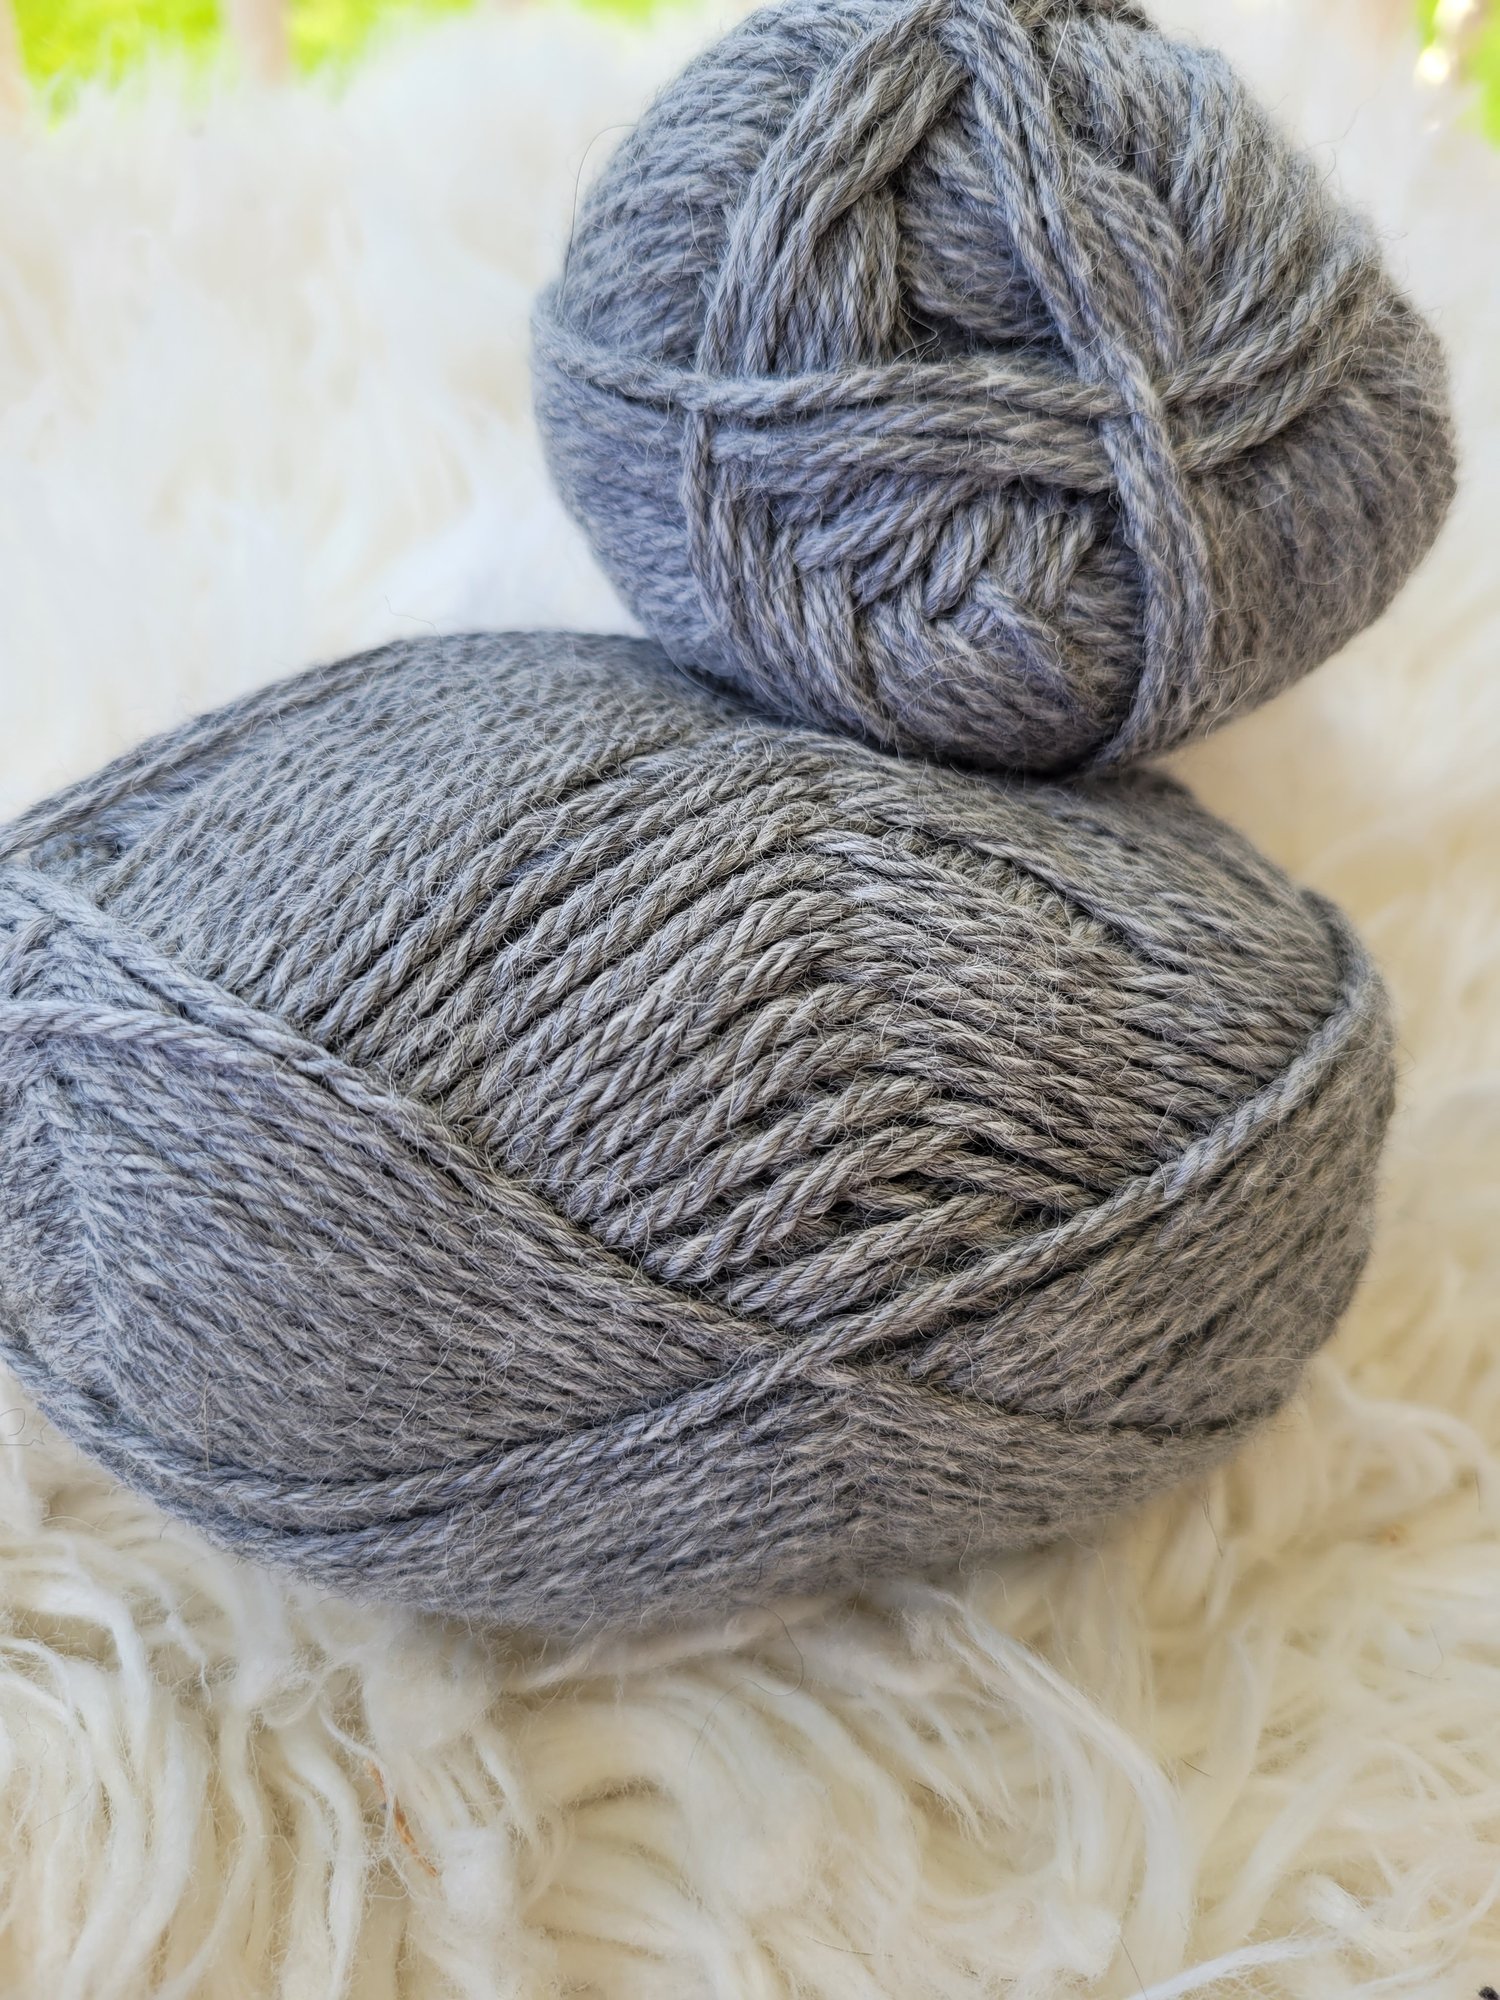 Alpaca Elegance DK Weight Alpaca Yarn for Knitting From 